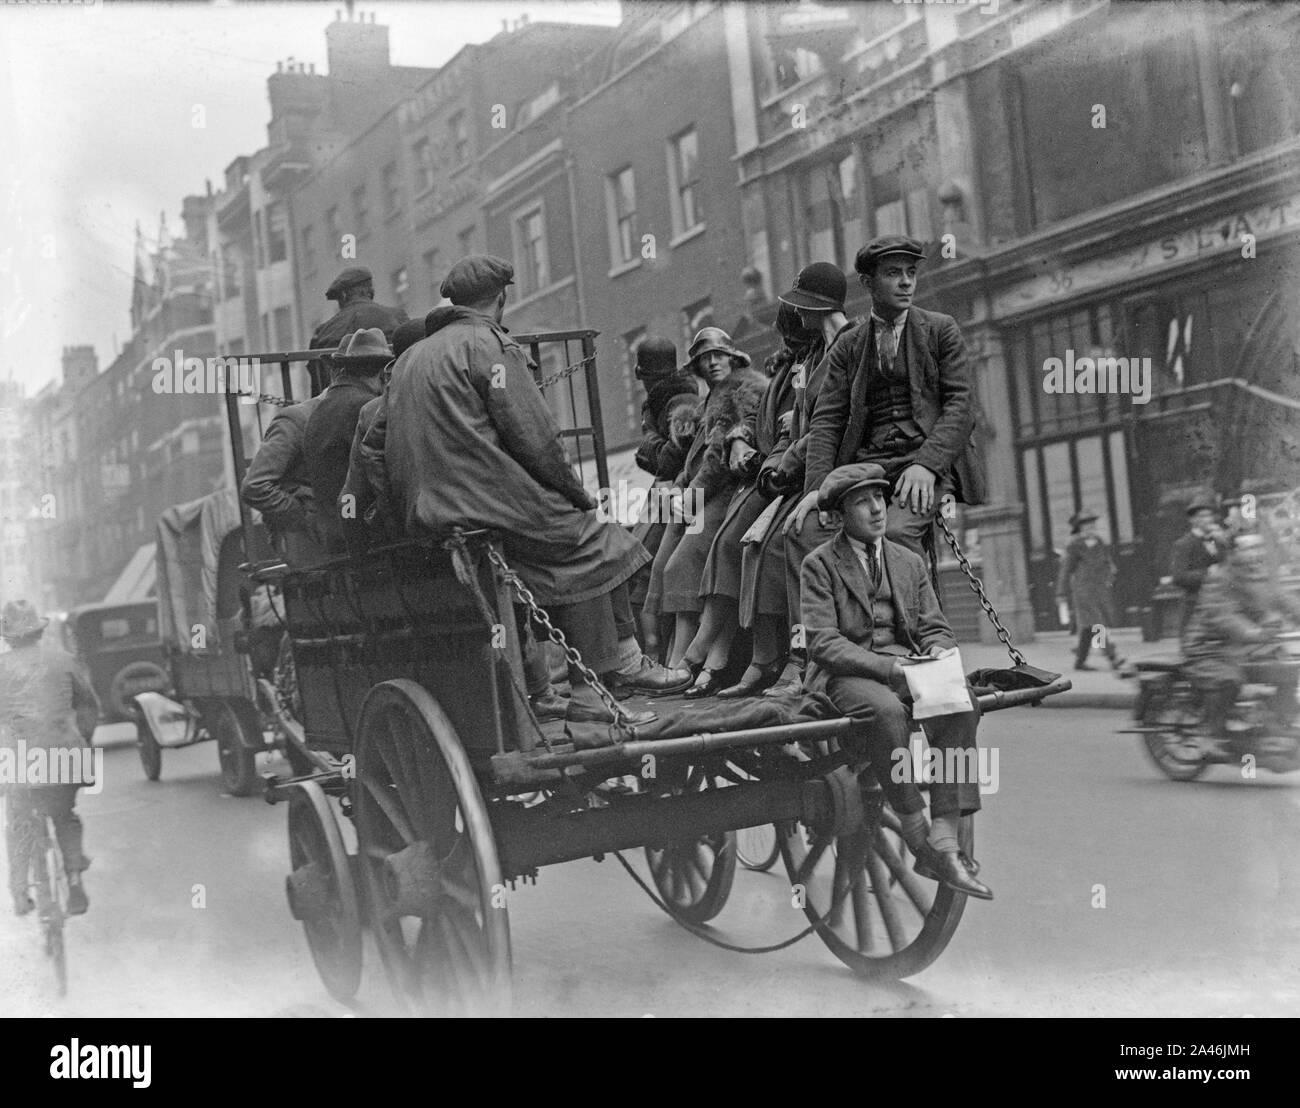 4 mai 1926, Londres, Angleterre. Comme la grève générale commence au Royaume-Uni, de nombreux services publics sont perturbés. Beaucoup de gens sont incapables d'utiliser les bus, alors je voyage autour de la ville comme ils le pouvaient. La photo montre les gens dans le dos d'un cheval et le chariot. Banque D'Images